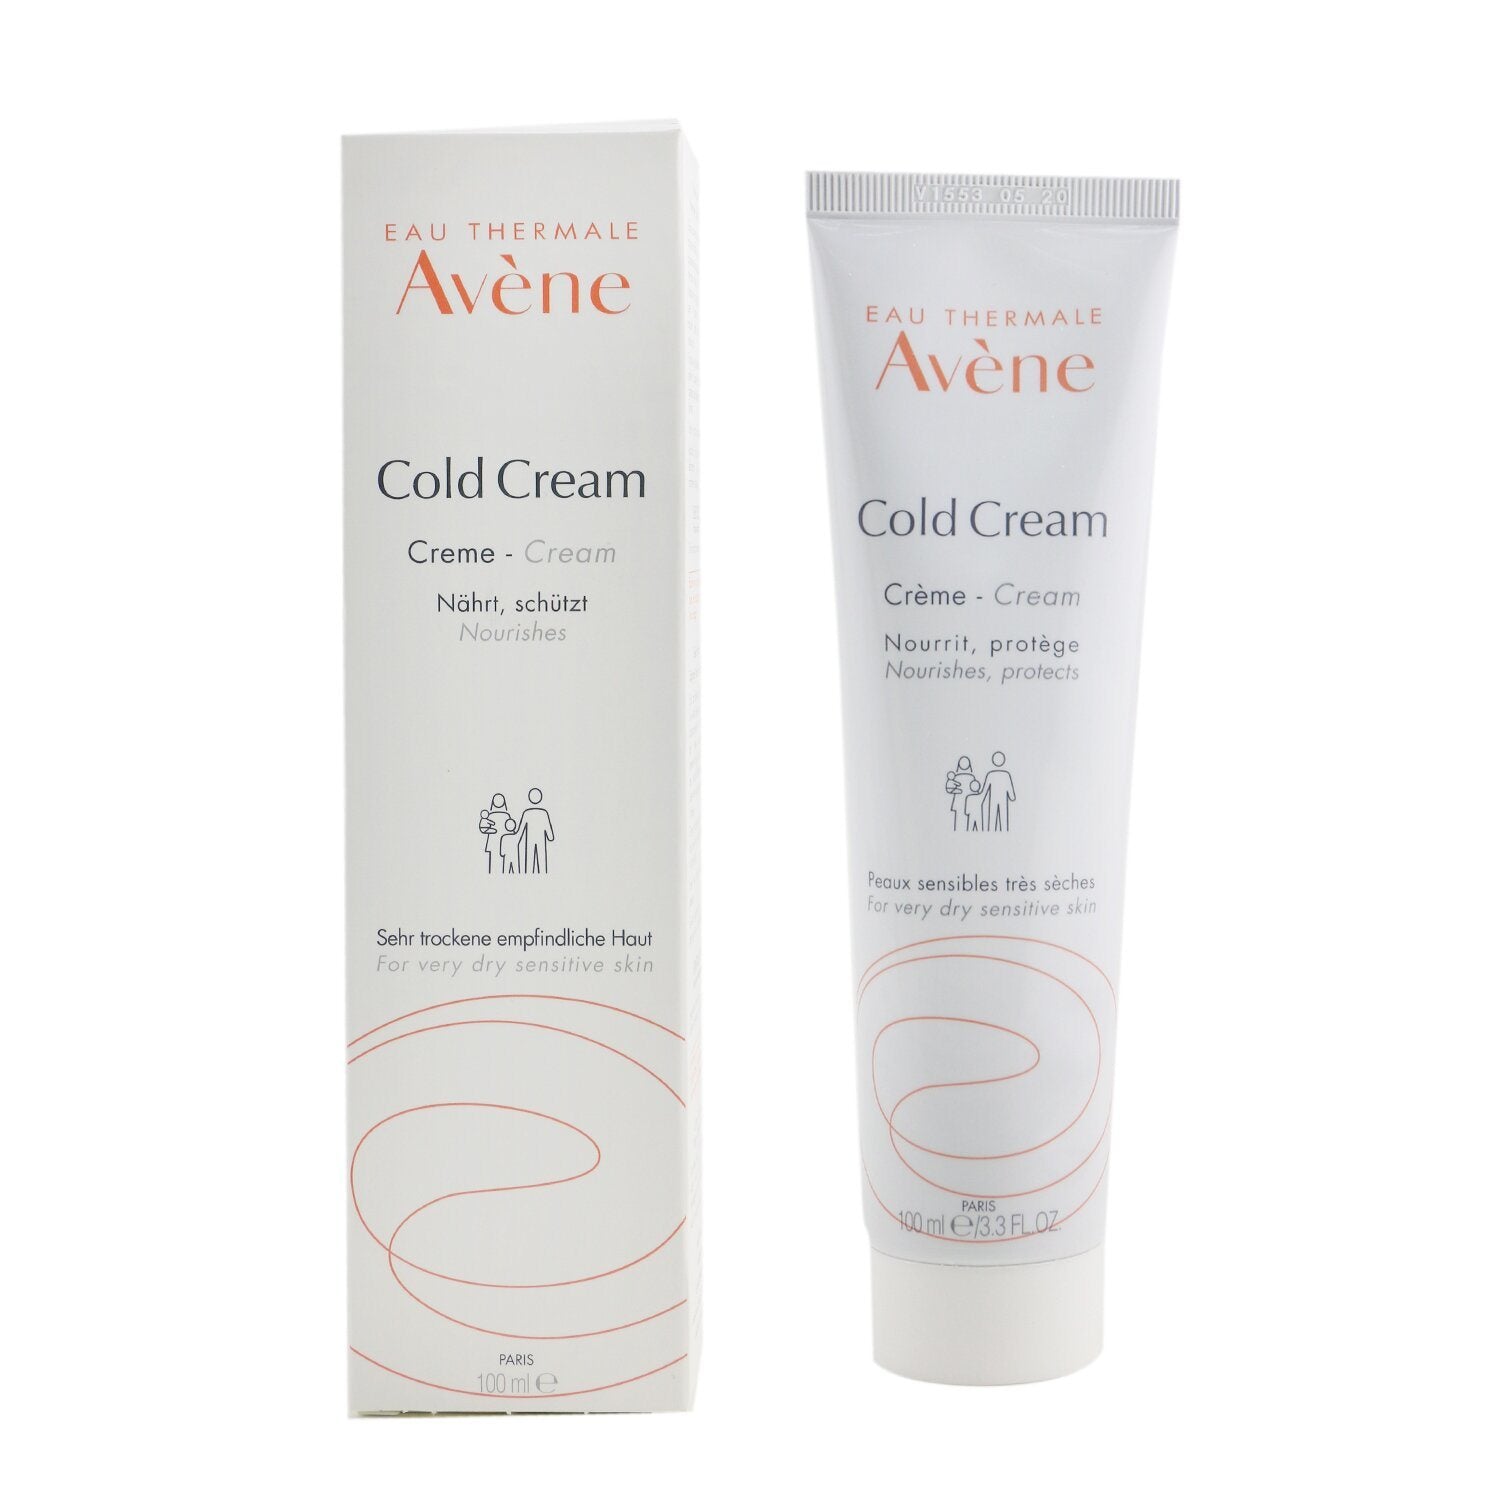 Avene Cold Cream - For Very Dry Sensitive Skin moisturizer.